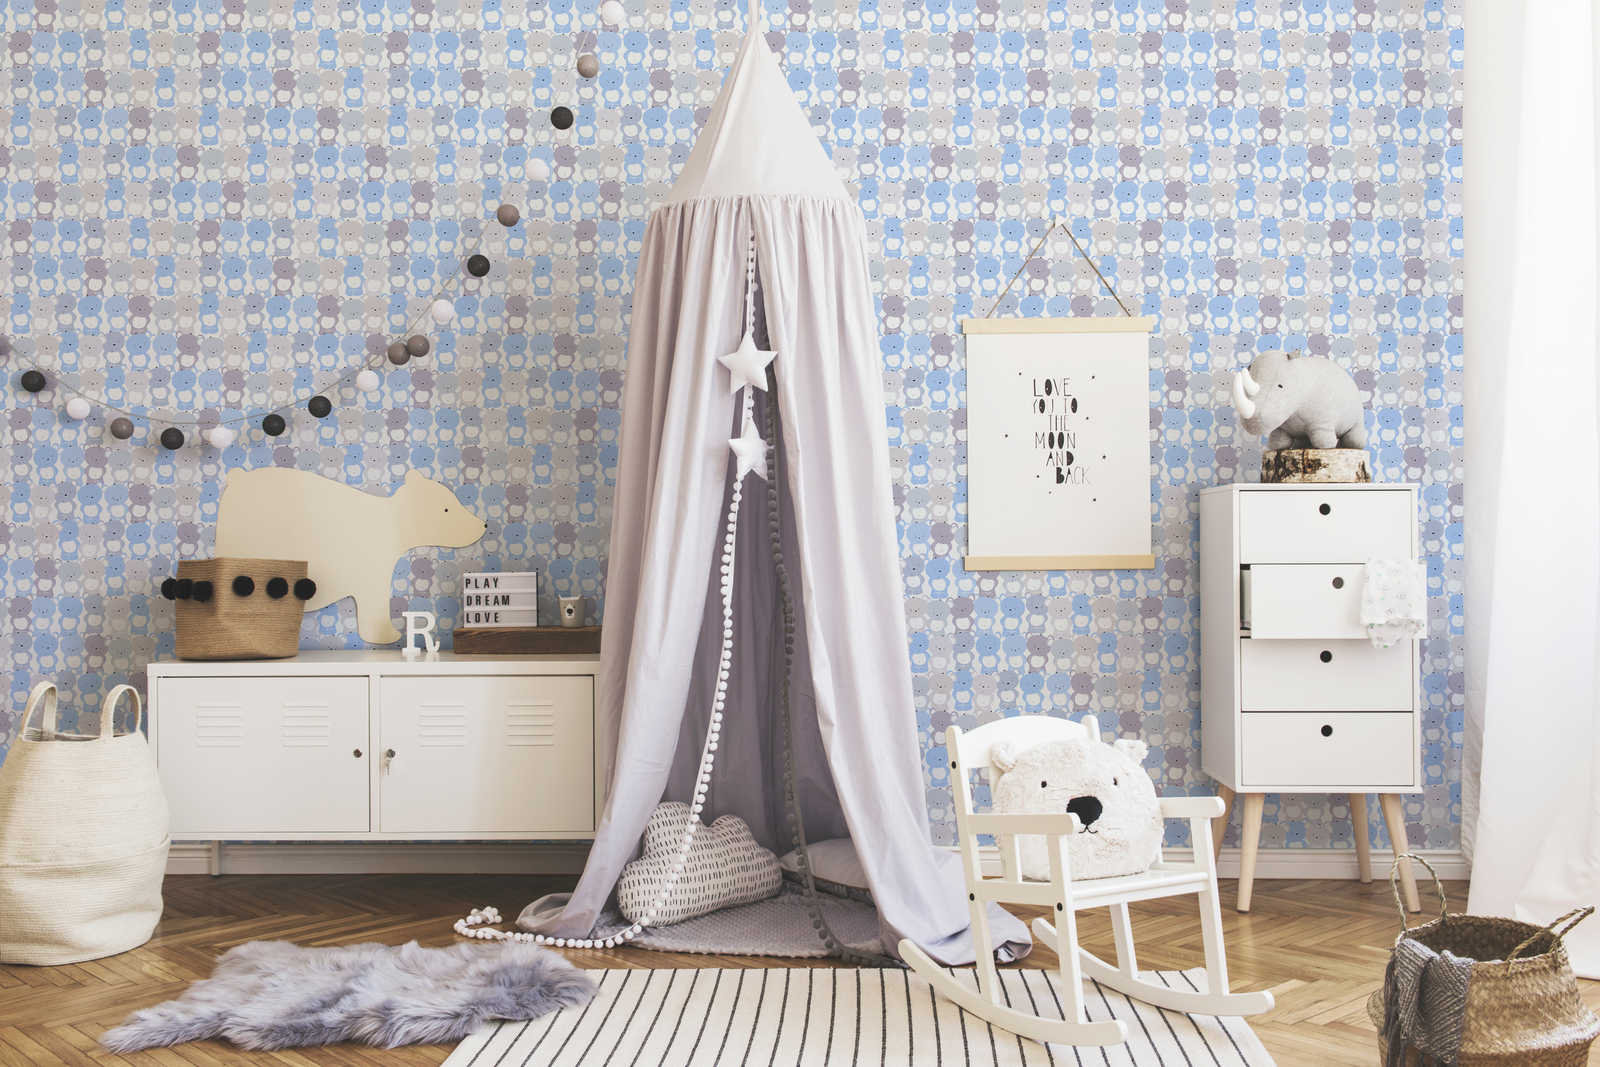             Papier peint enfant chambre garçon motif ourson - bleu, gris , blanc
        